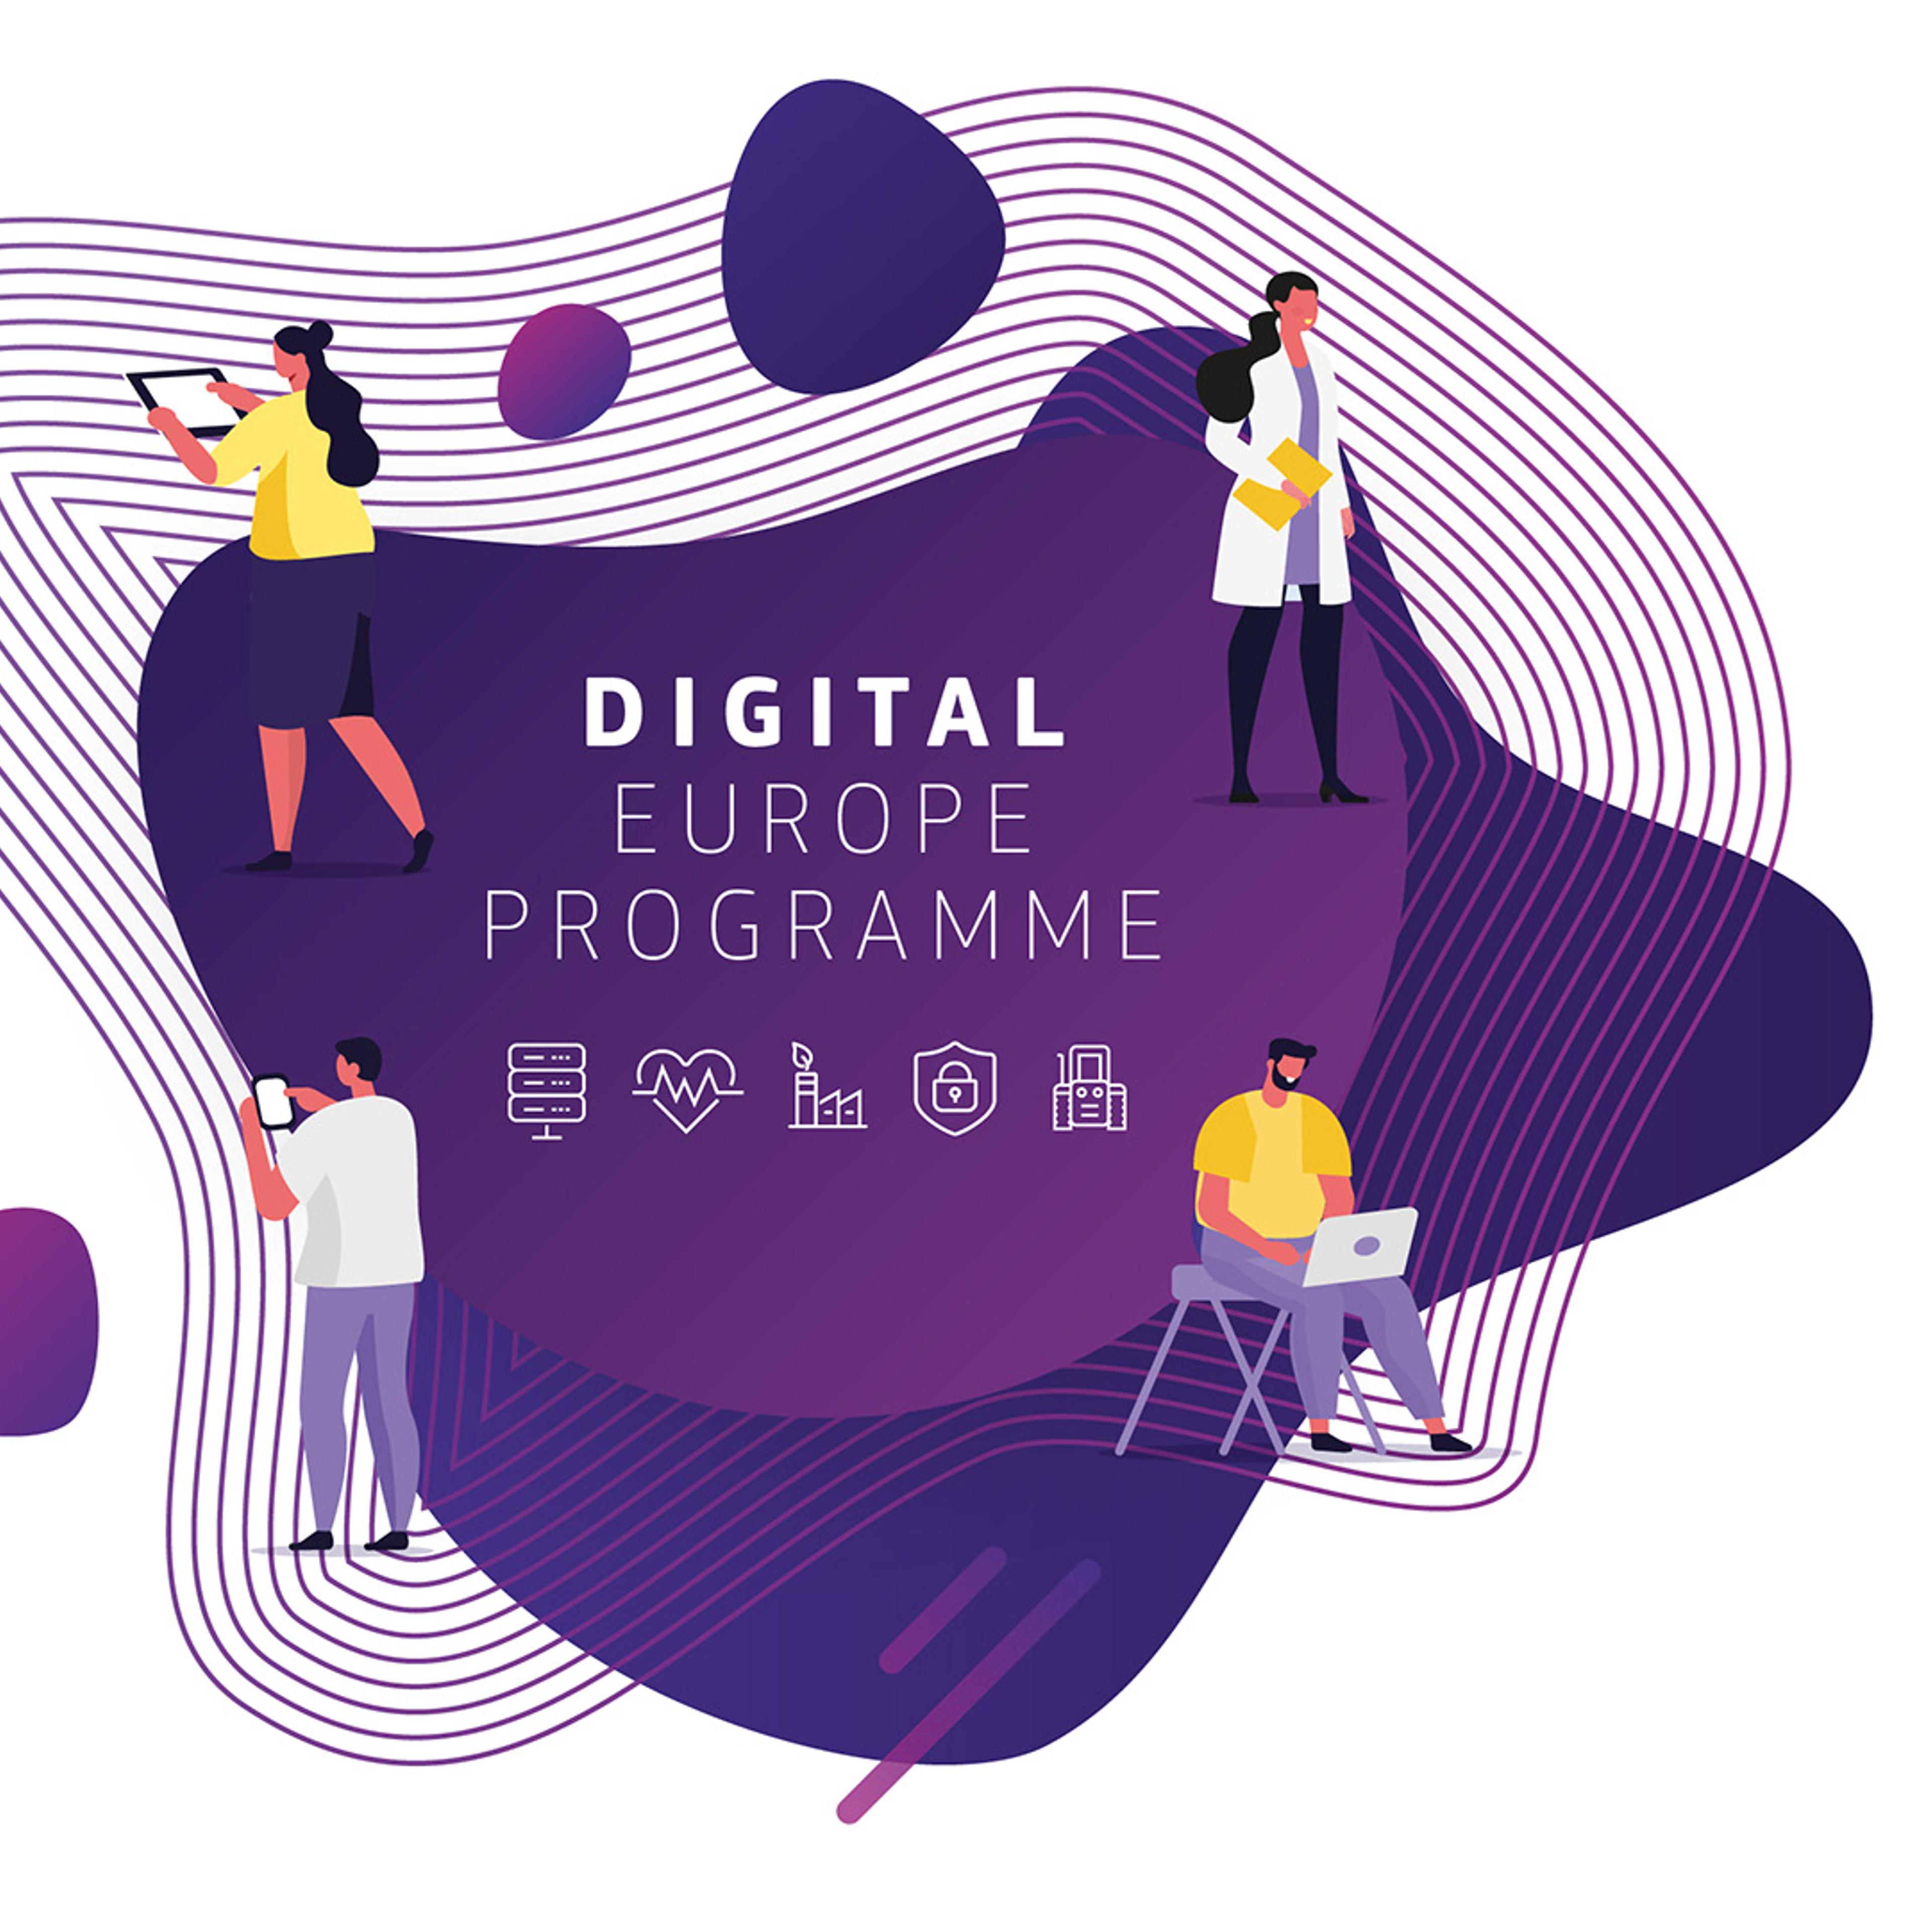 Digital Europe Programme omringet av animasjoner av ulike mennesker som jobber med digitale yrker